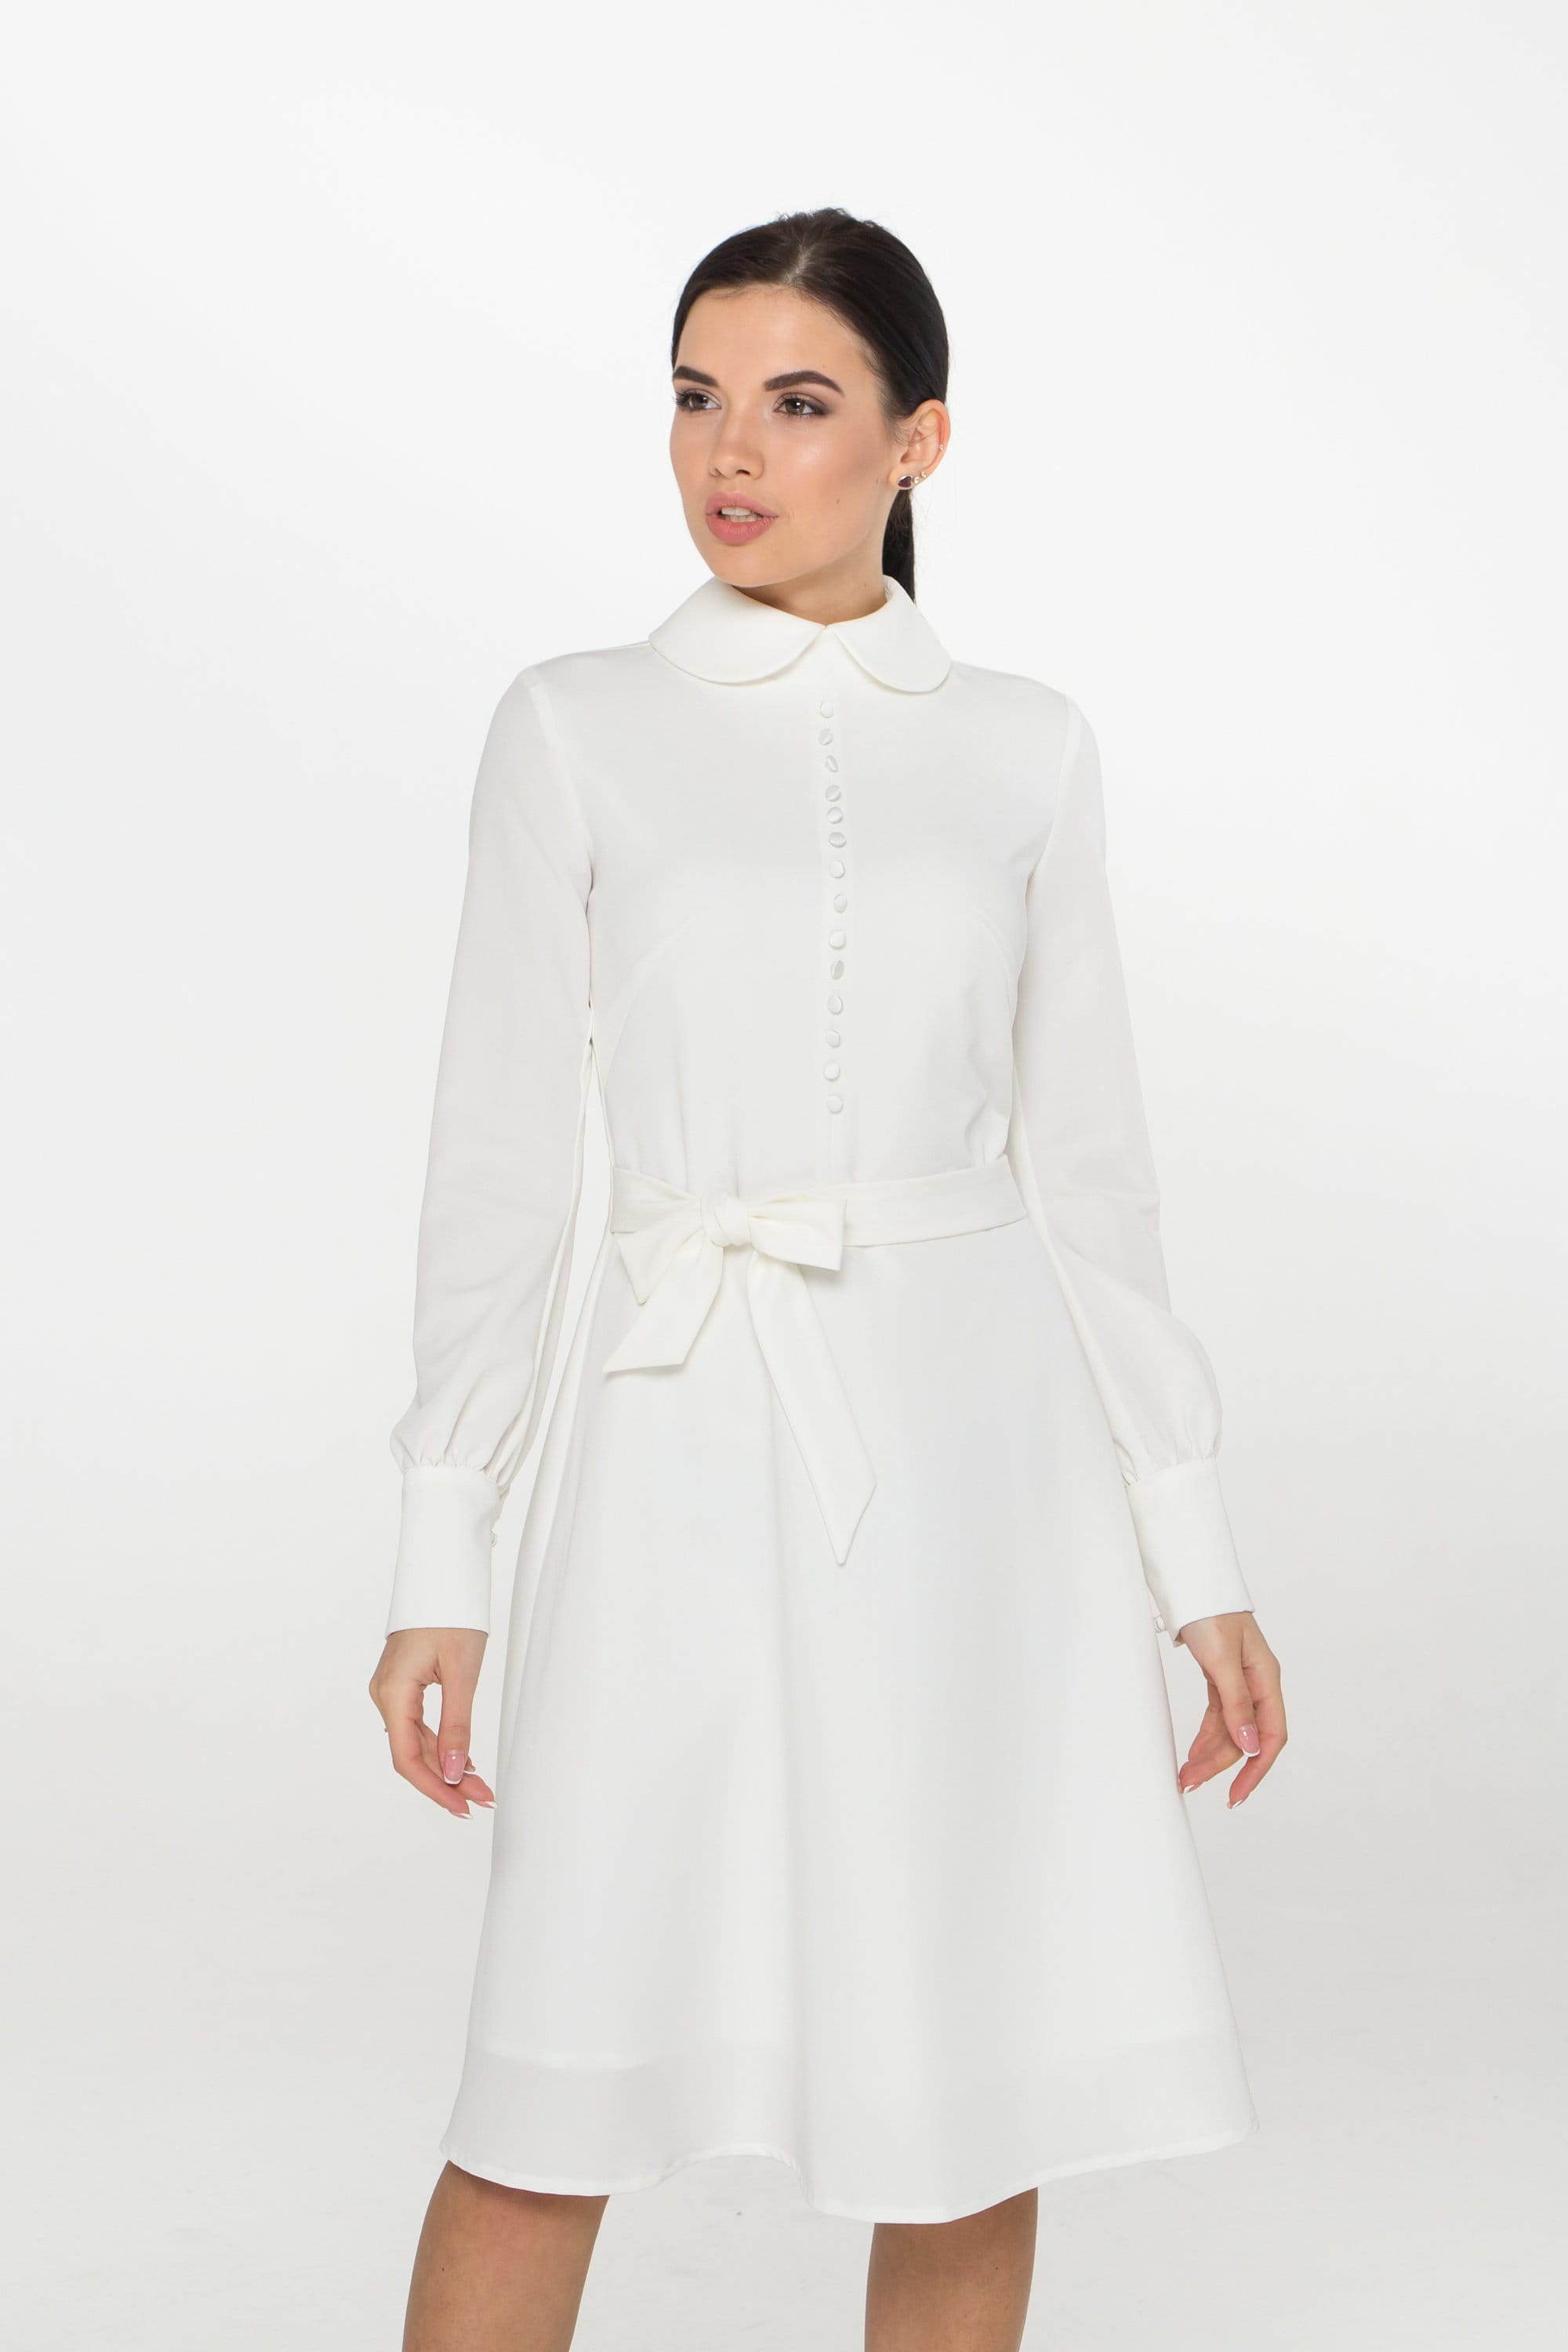 15,46 US$-Vestido elegante de camisa blanca para mujer, vestido de manga  larga con cuello de solapa y botones, vestido informal de  oficina-Description